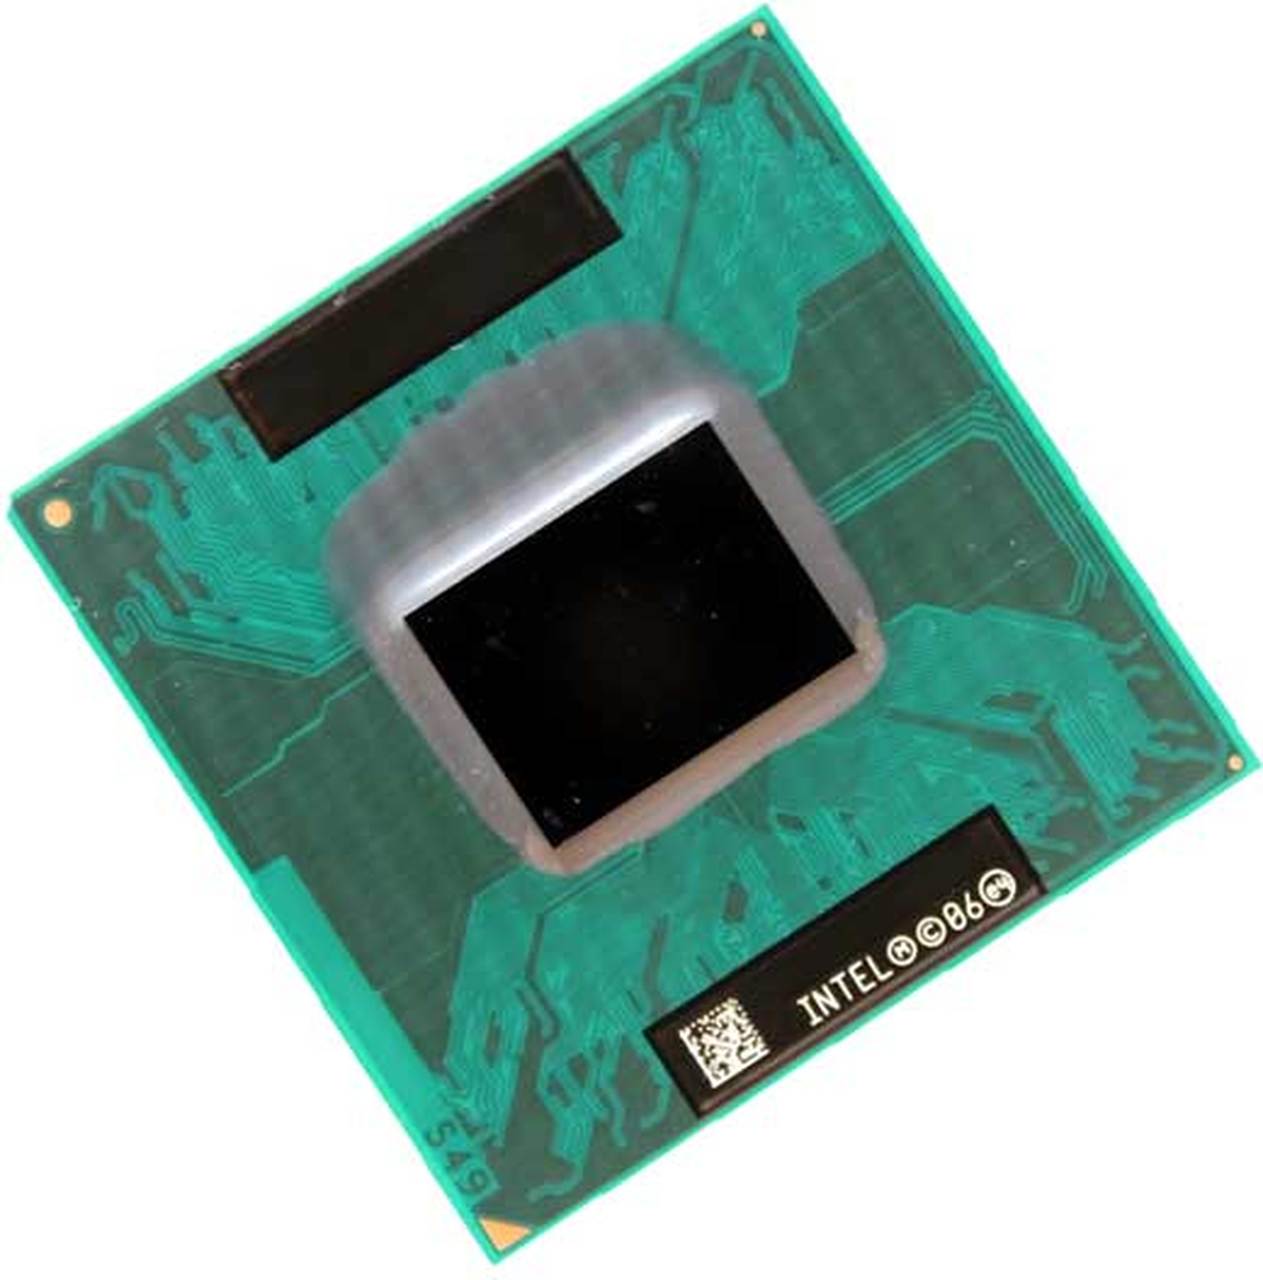 T1300 | Intel Core Solo T1300 1 Core 1.66GHz PGA478 2 MB L2 Processor